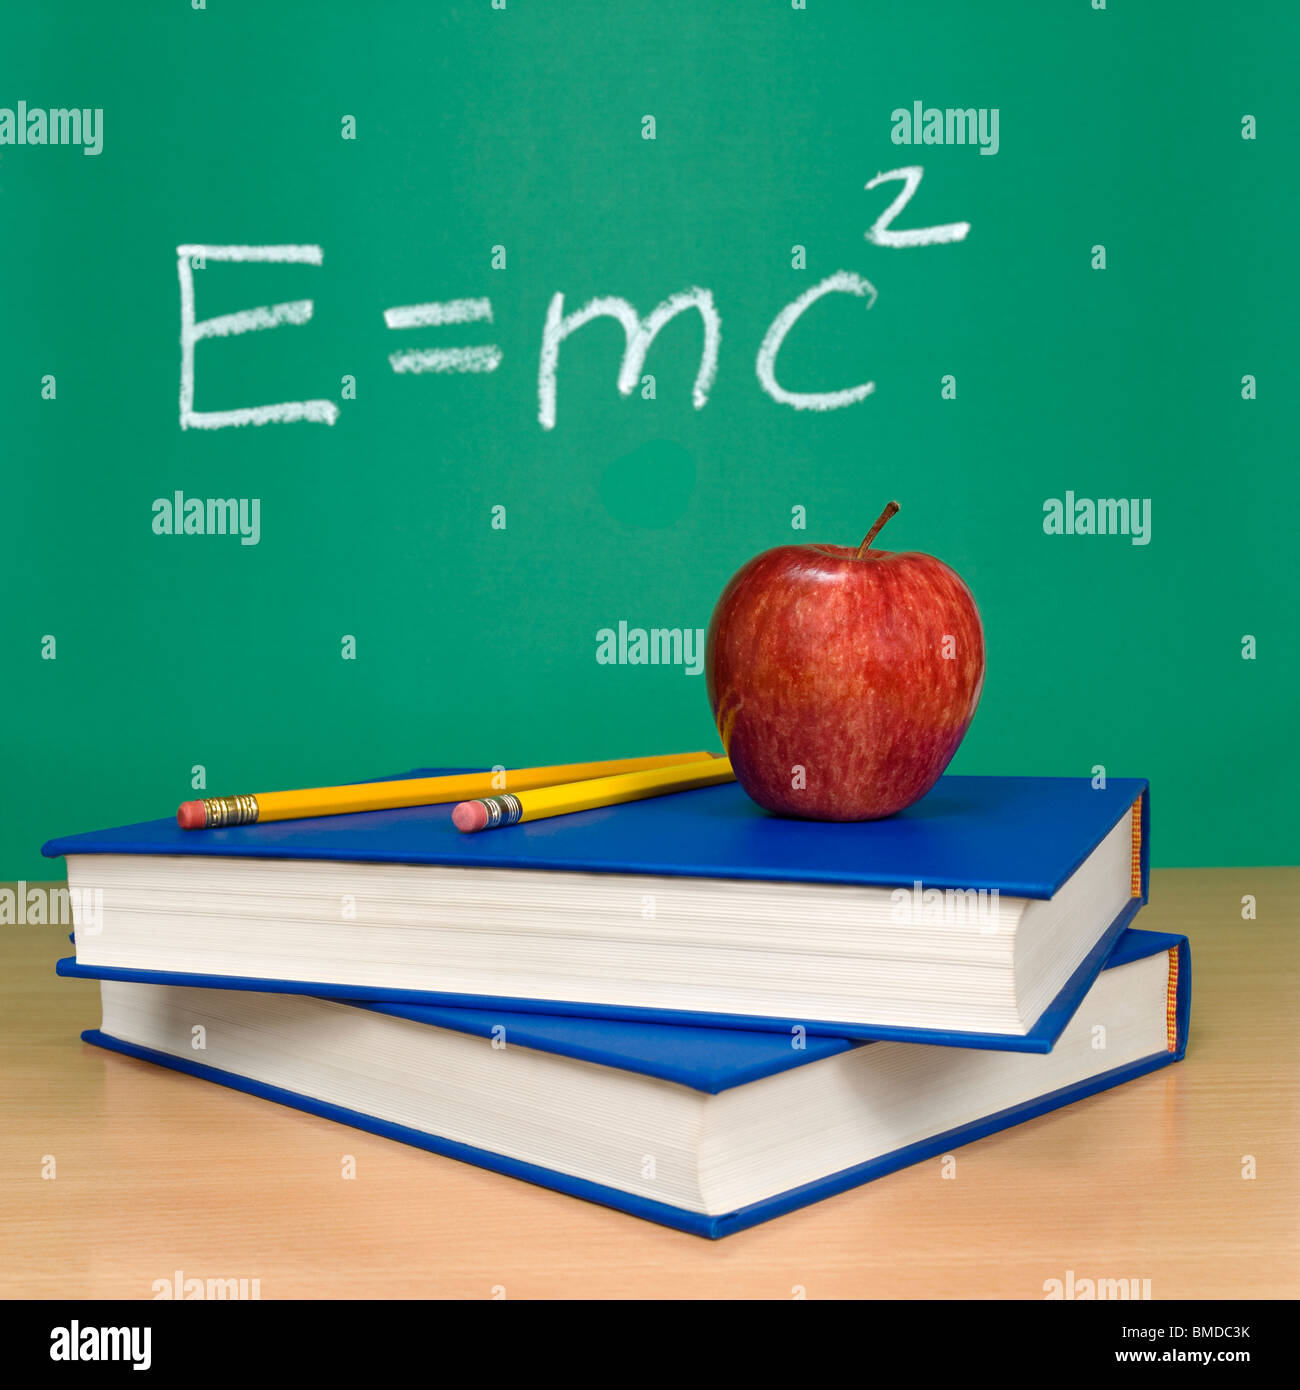 La fórmula de Einstein de la teoría de la relatividad en una pizarra. Libros, lápices y una manzana en primer plano. Foto de stock